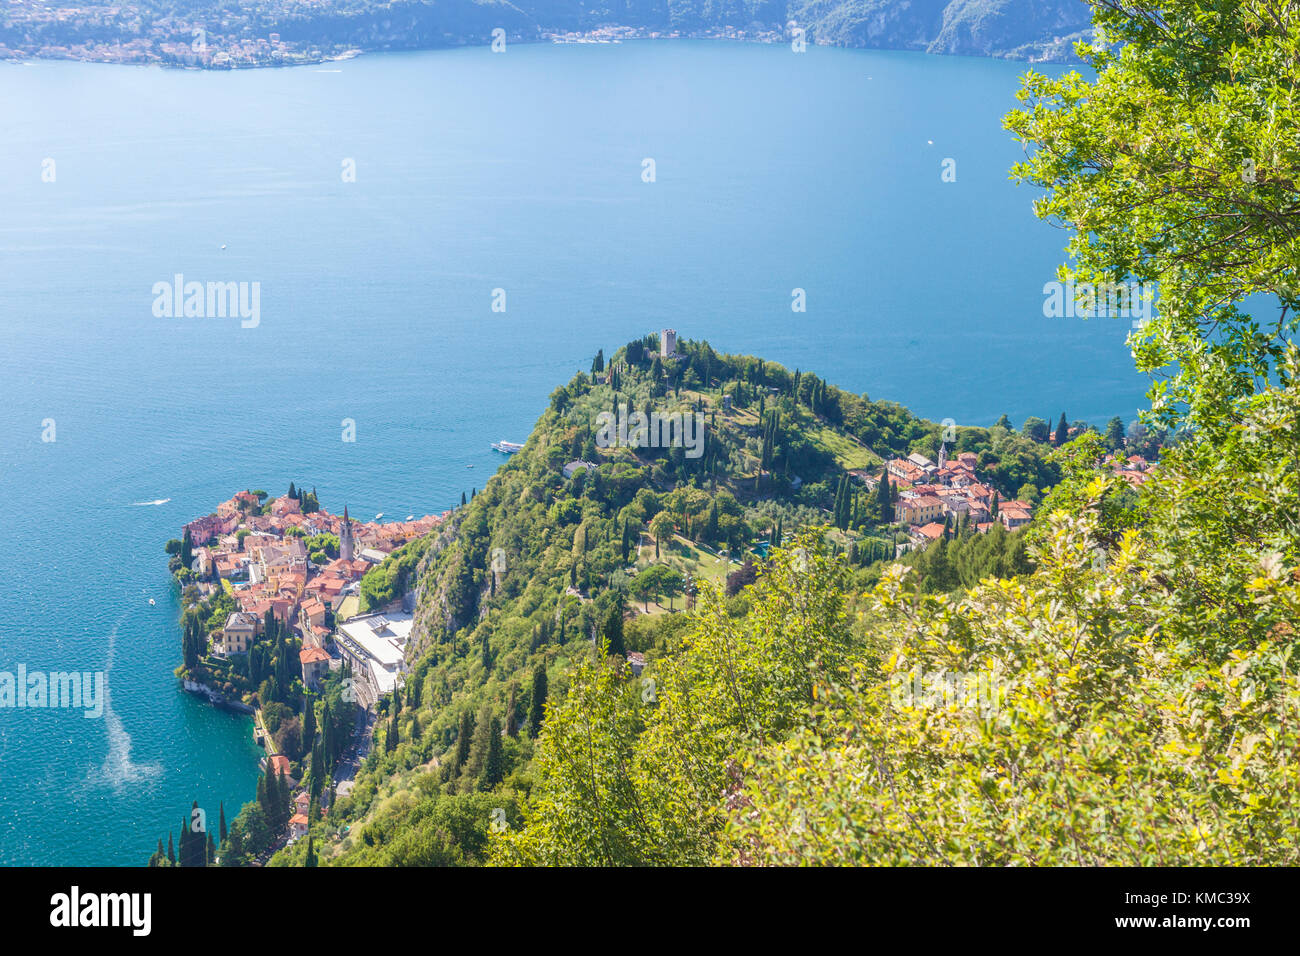 Castello di Vezio above the village of Varenna, Lake Como, province of Lecco, Lombardy, Italy Stock Photo